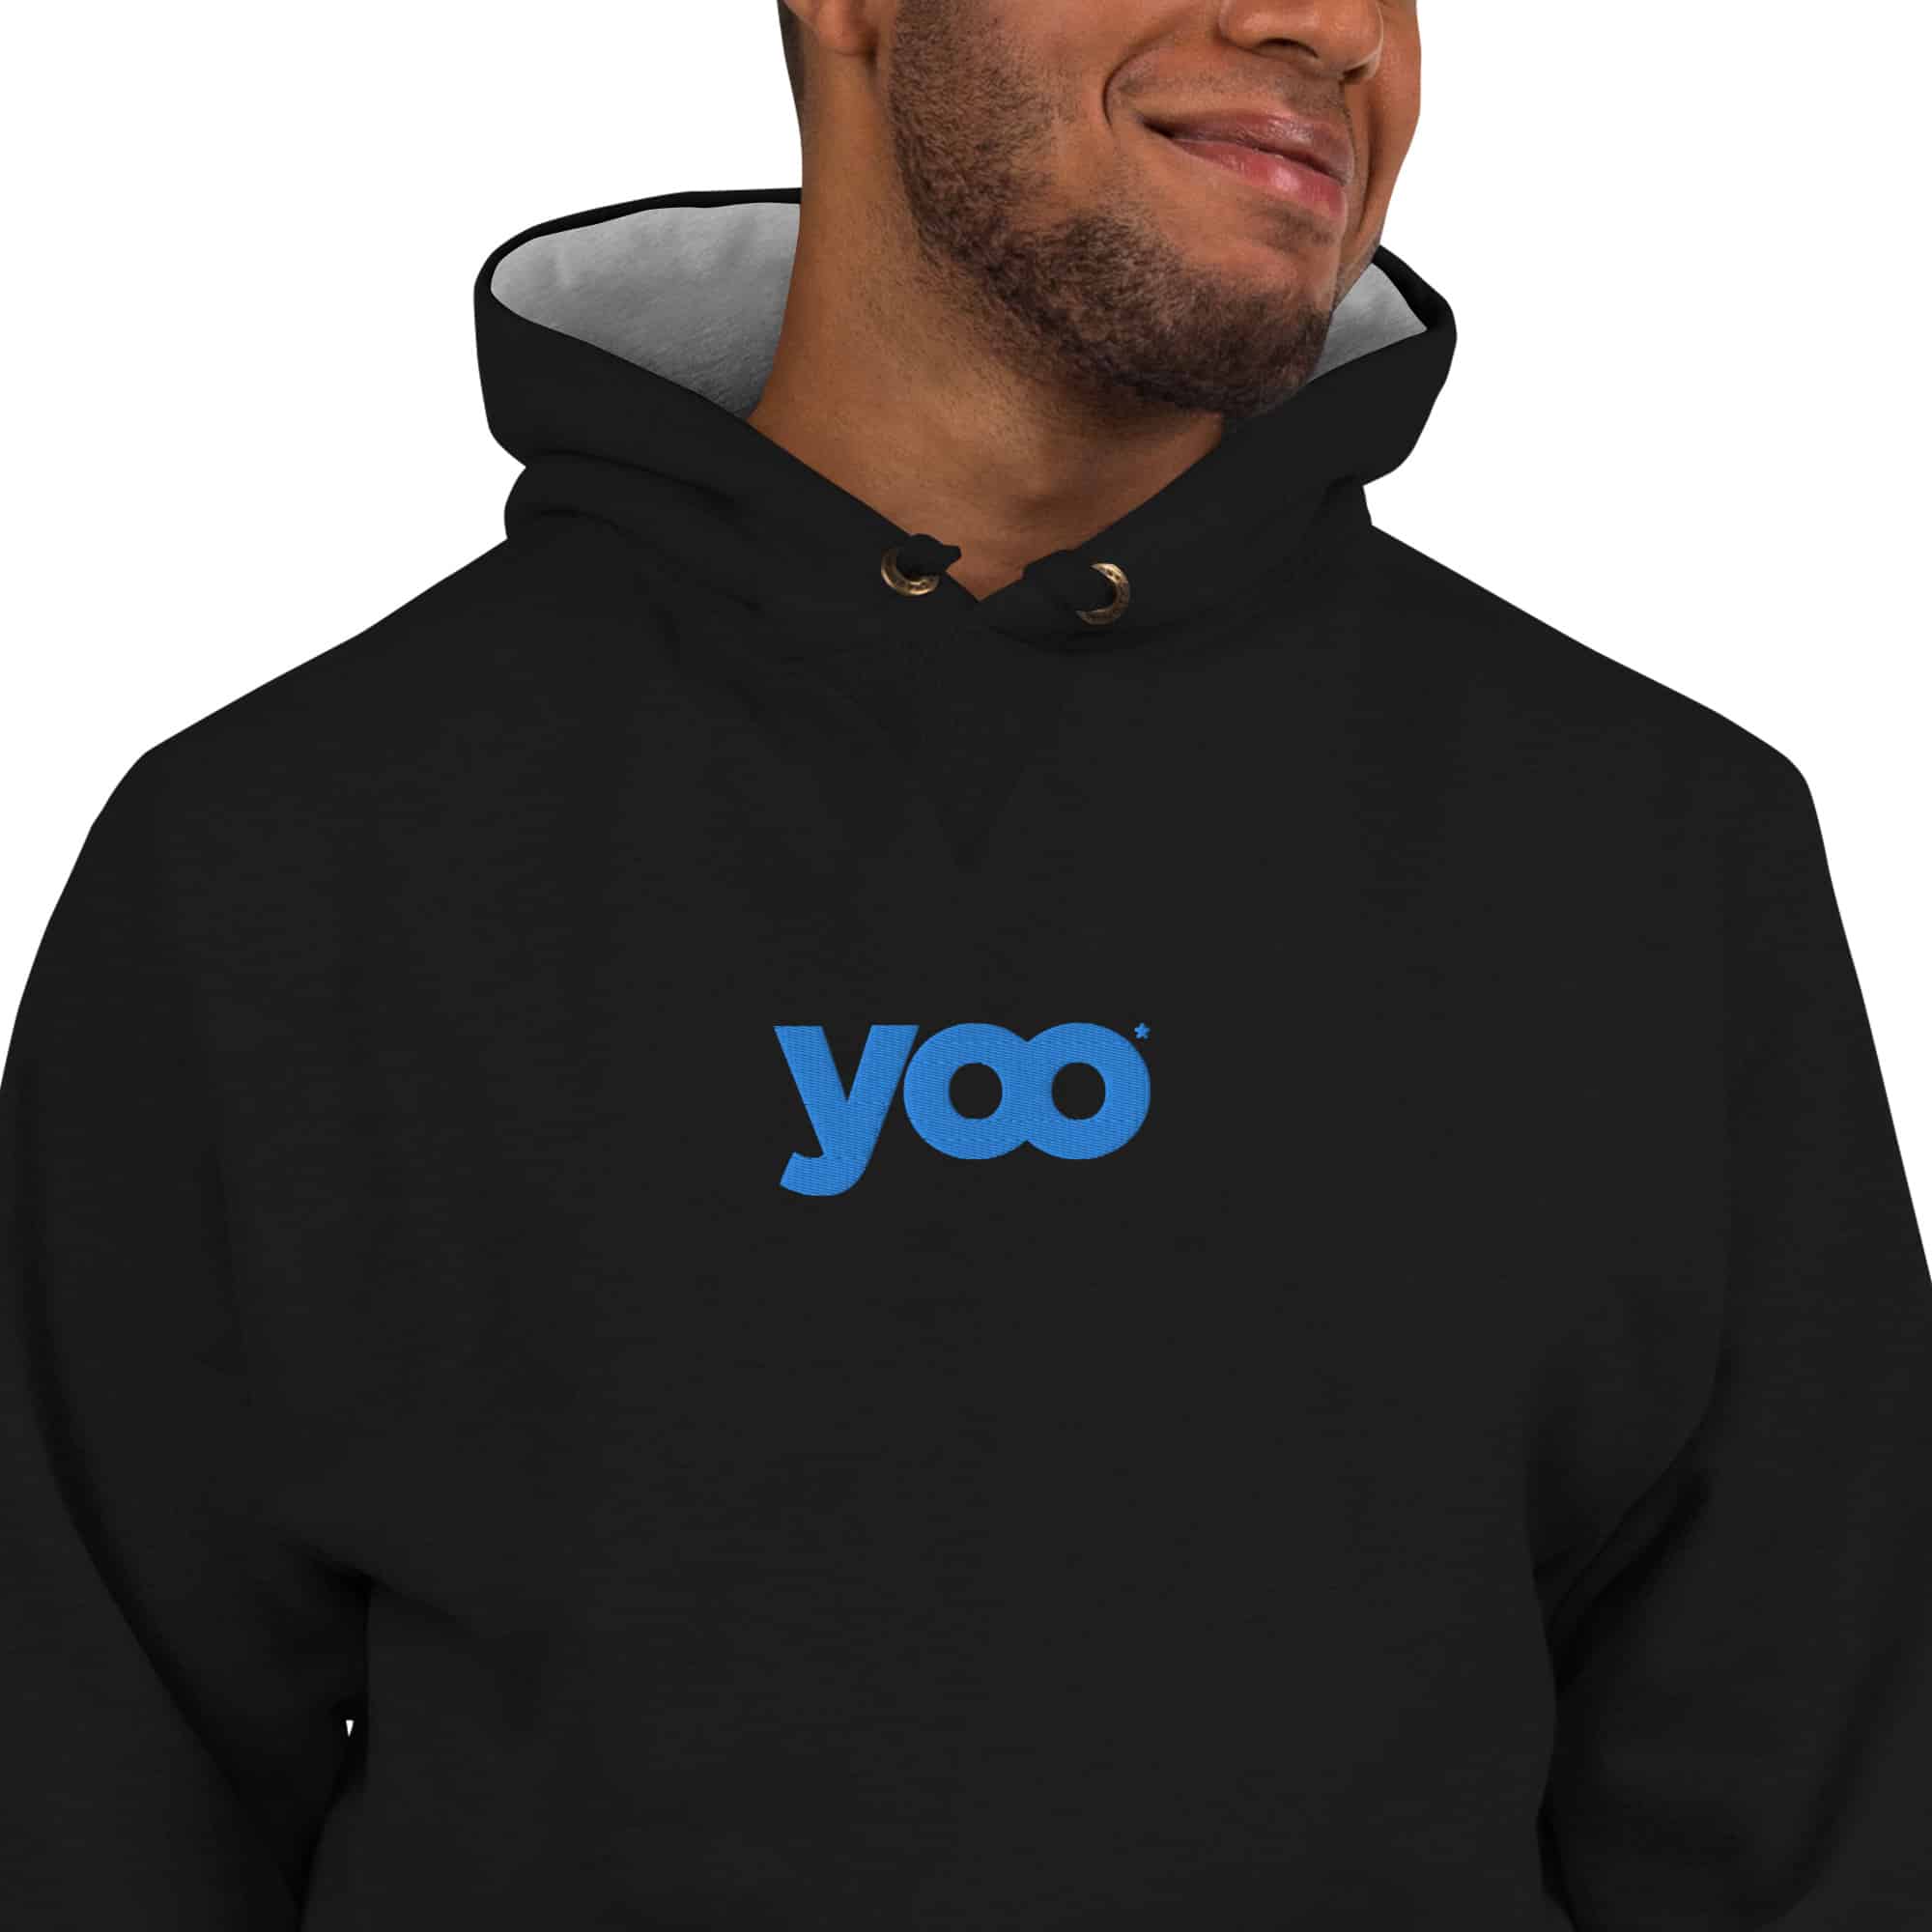 Détail sur le sweatshirt noir à capuche bi-color brodé du message "yoo" en situation sur manequin homme